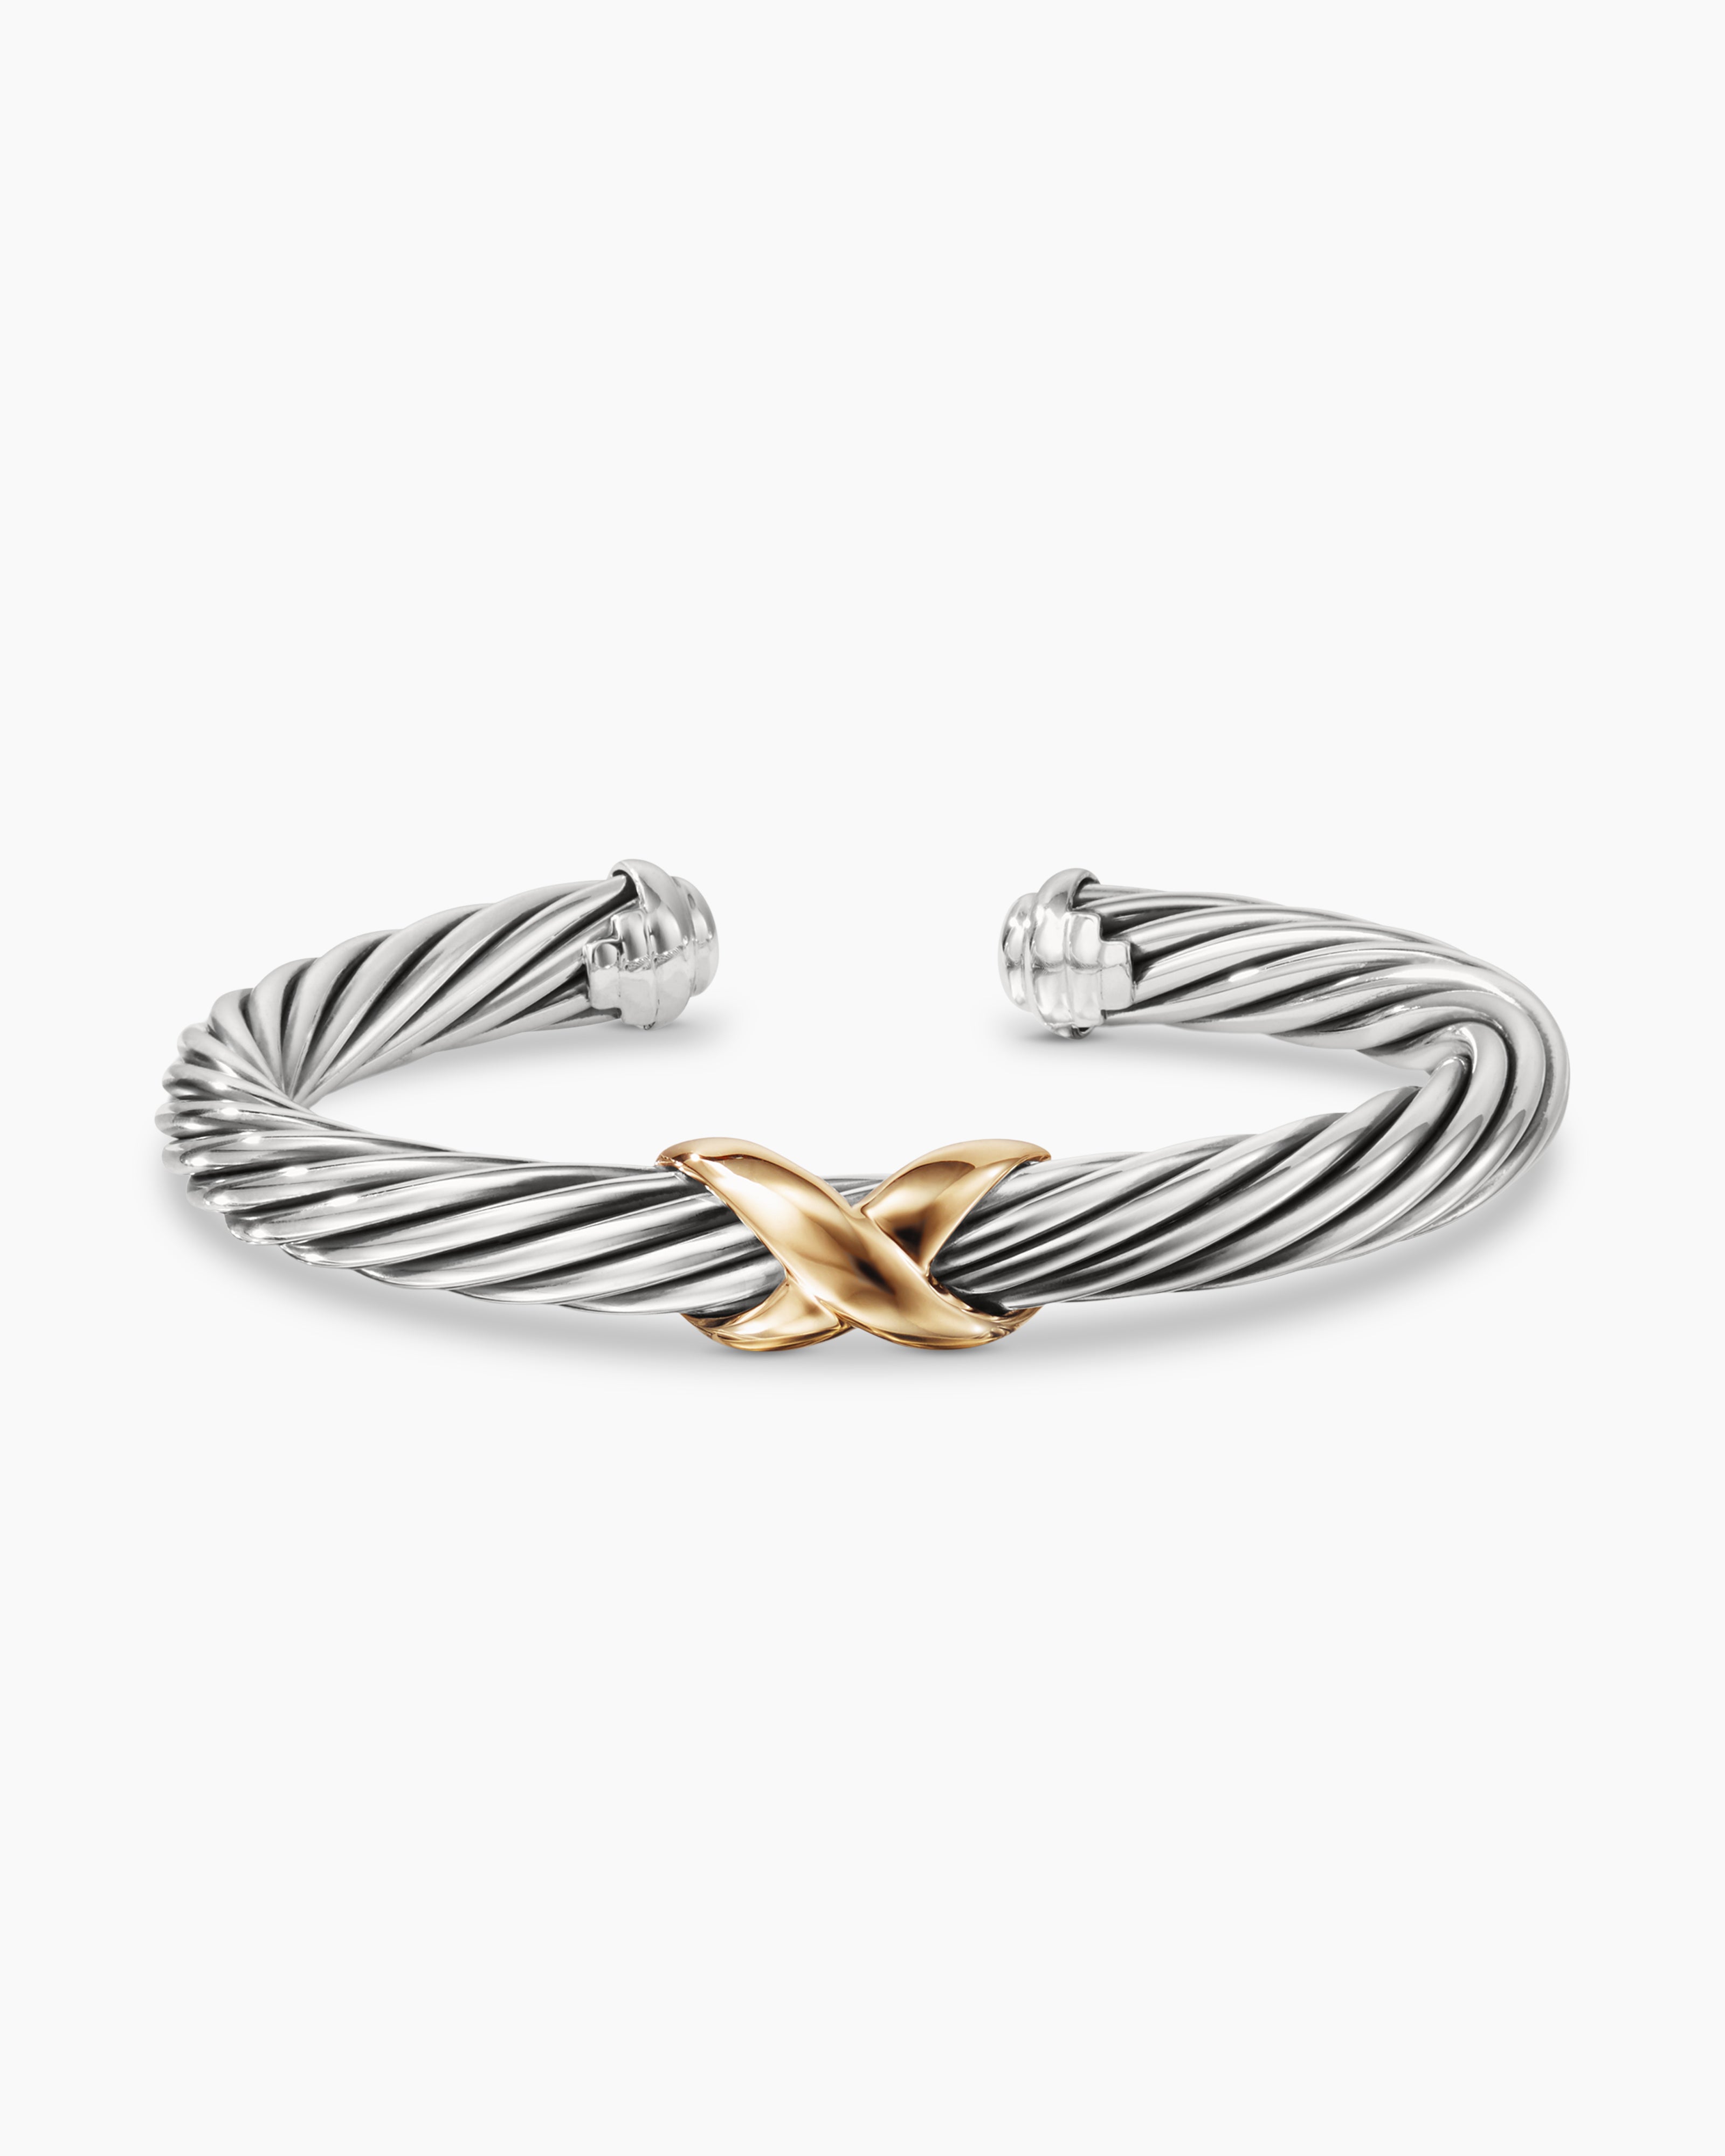 Men's David Yurman Elongated Open Link Chain Bracelet in Sterling Silver,  8mm | REEDS Jewelers